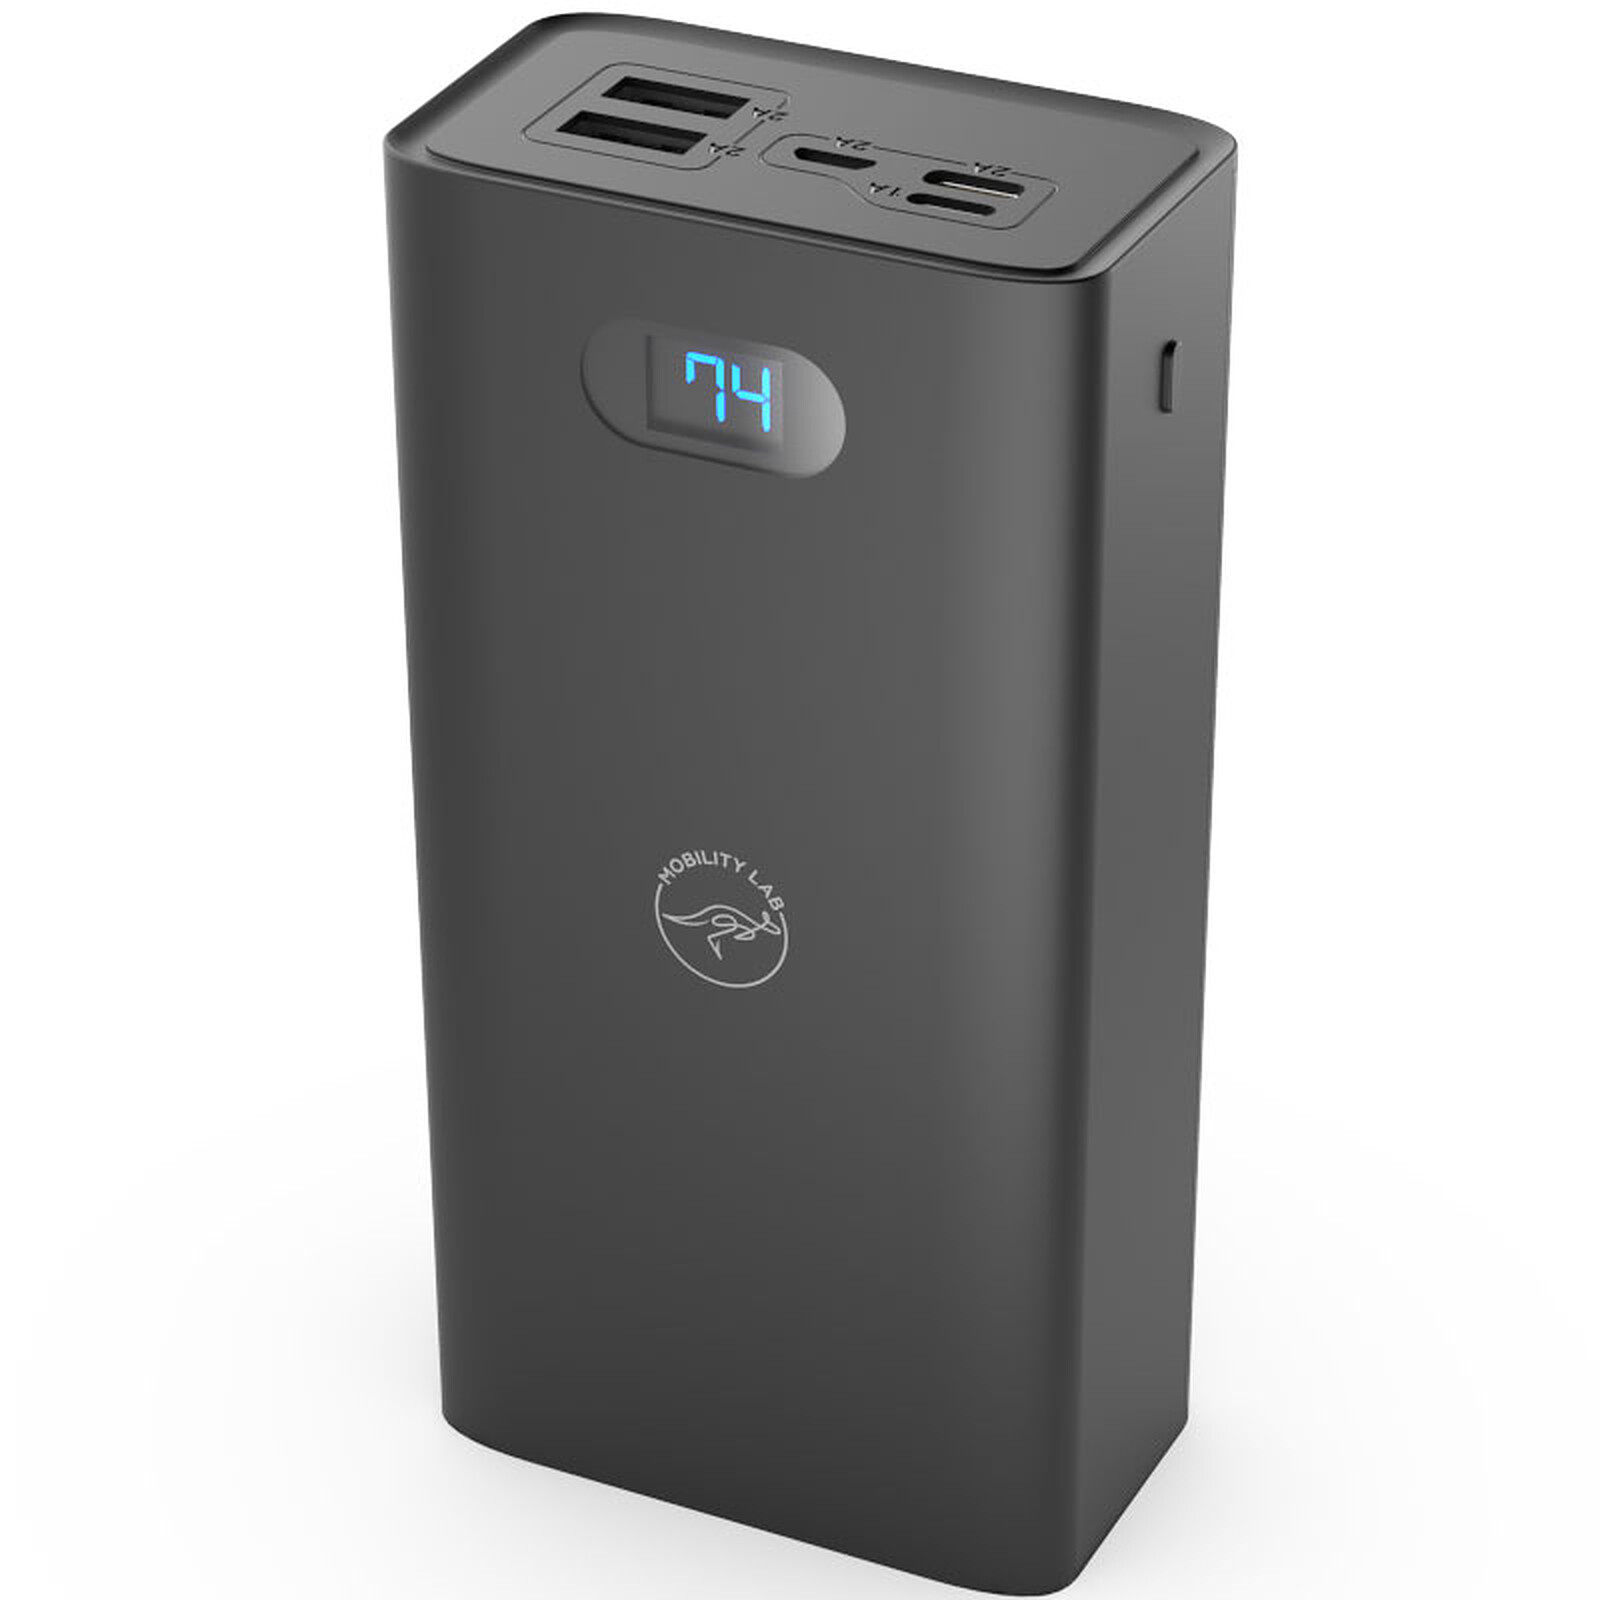 Mobility Lab Powerbank 30000 mAh (Noir) - Batterie externe - LDLC